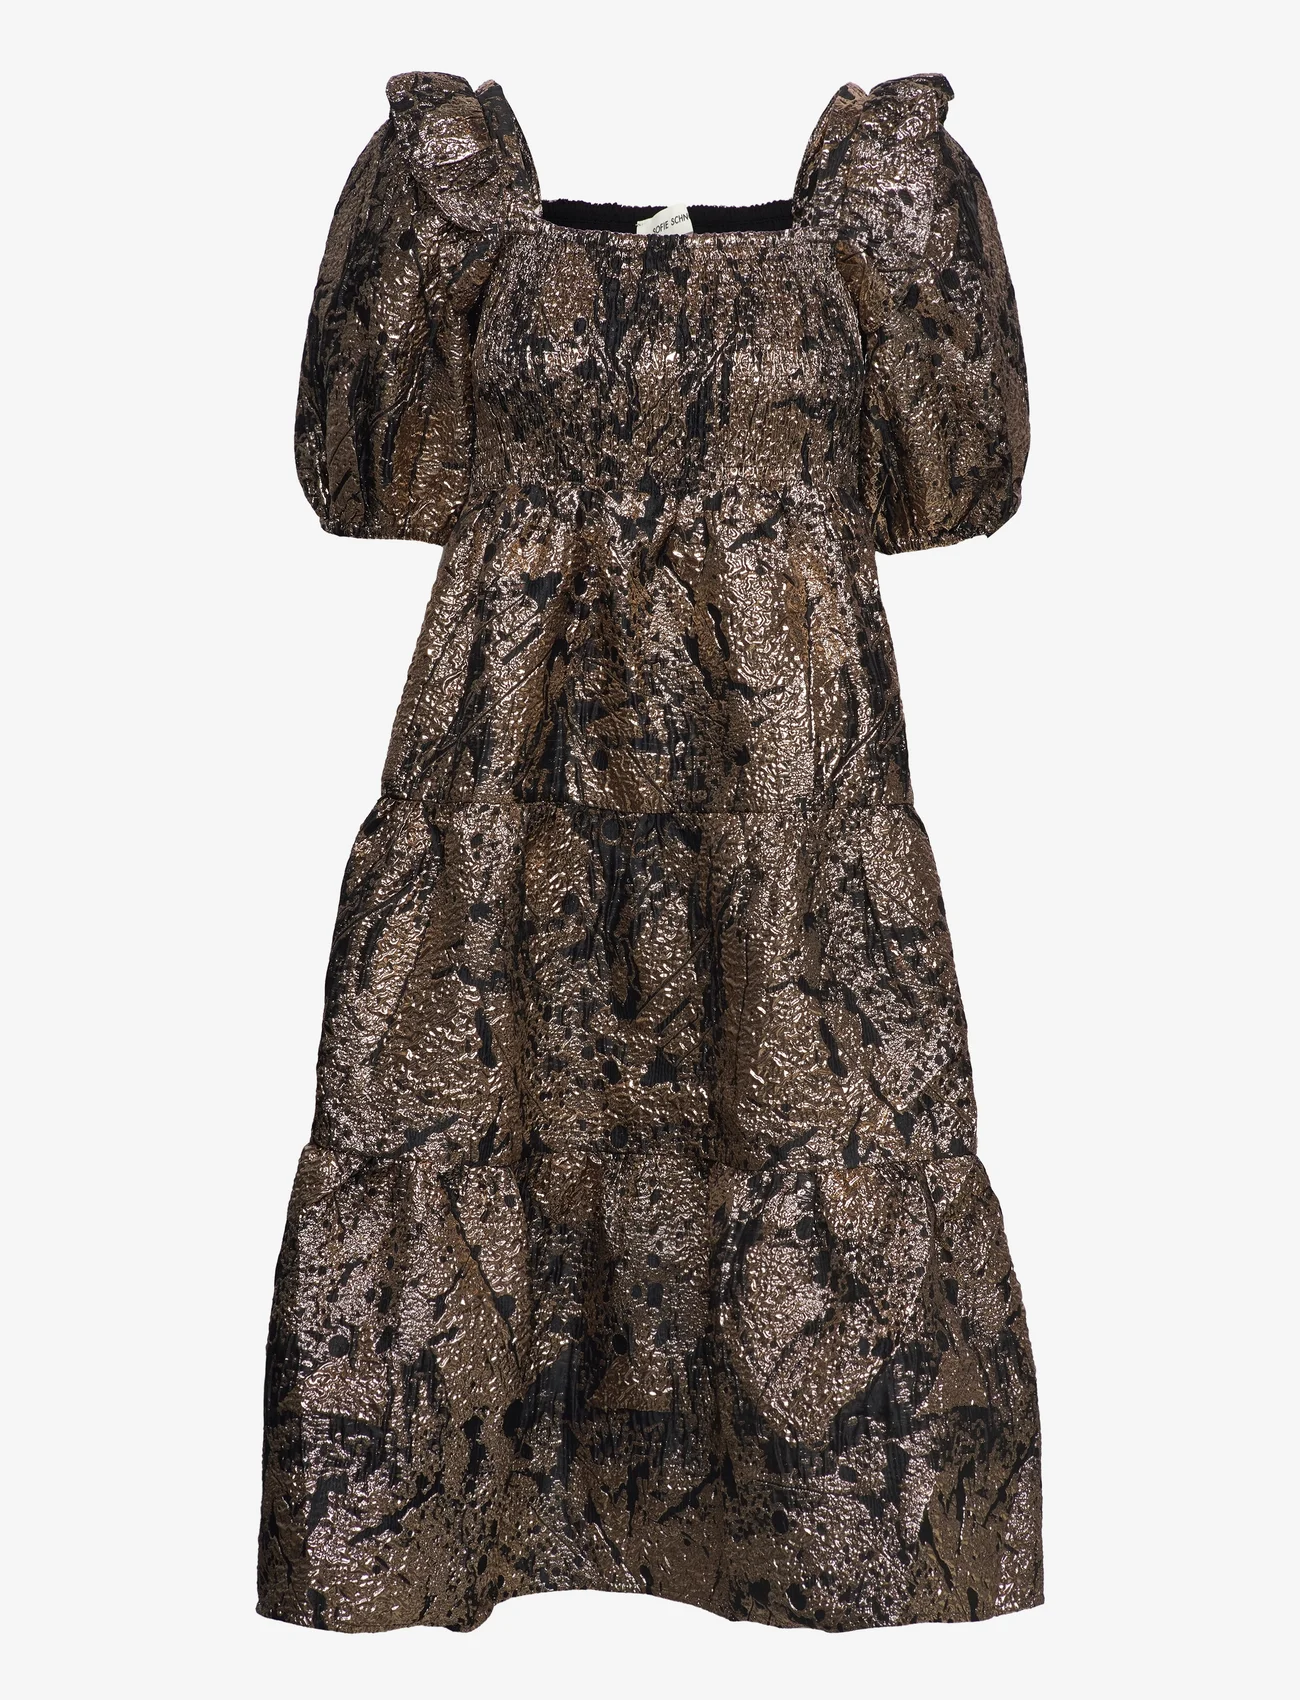 Sofie Schnoor - Dress - ballīšu apģērbs par outlet cenām - light brown - 0